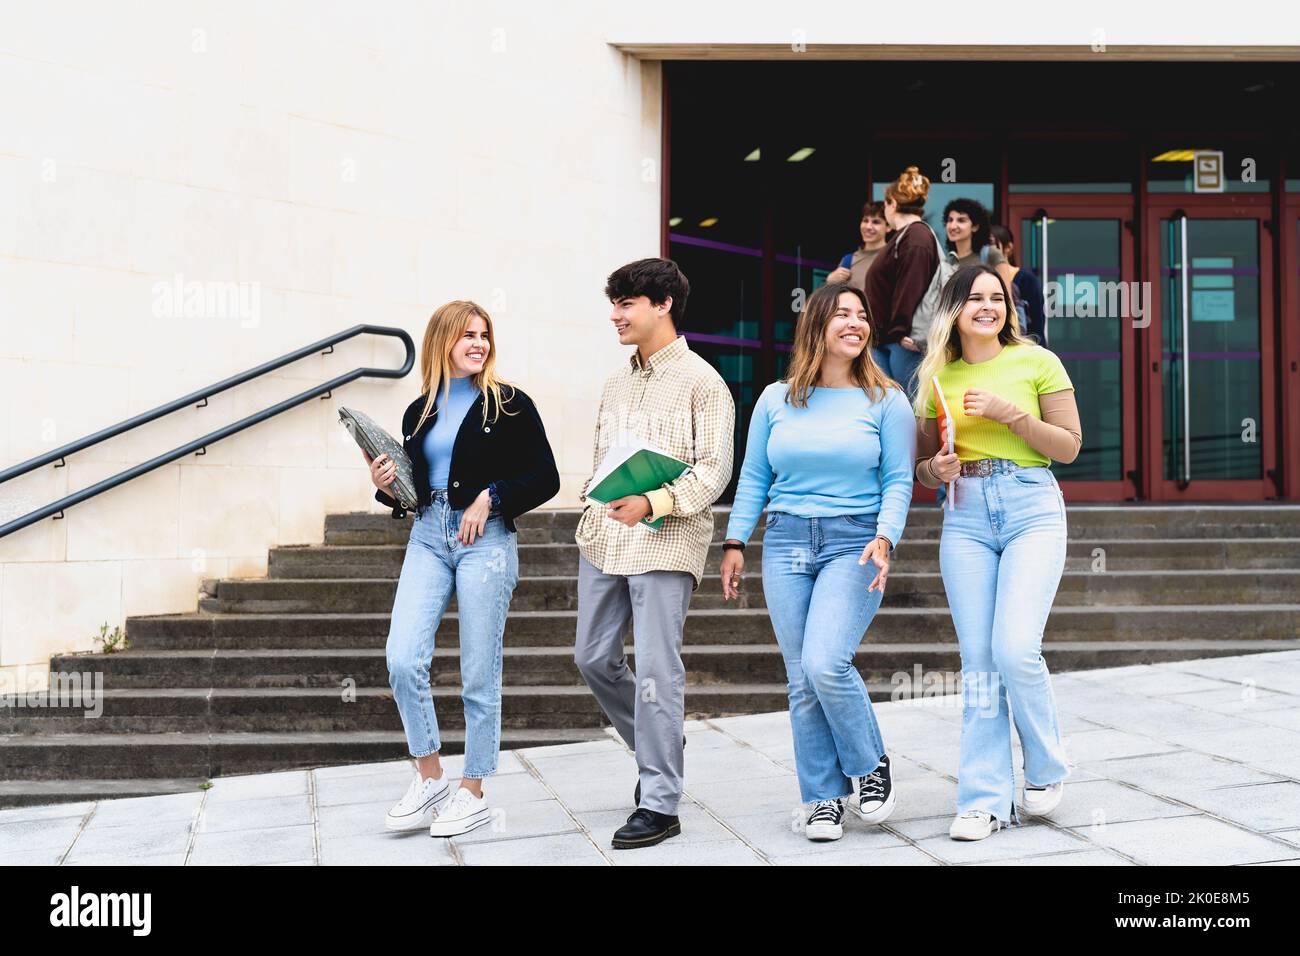 Junge, vielfältige Studenten verlassen die Universität nach dem Unterricht - Jugend- und Bildungskonzept Stockfoto